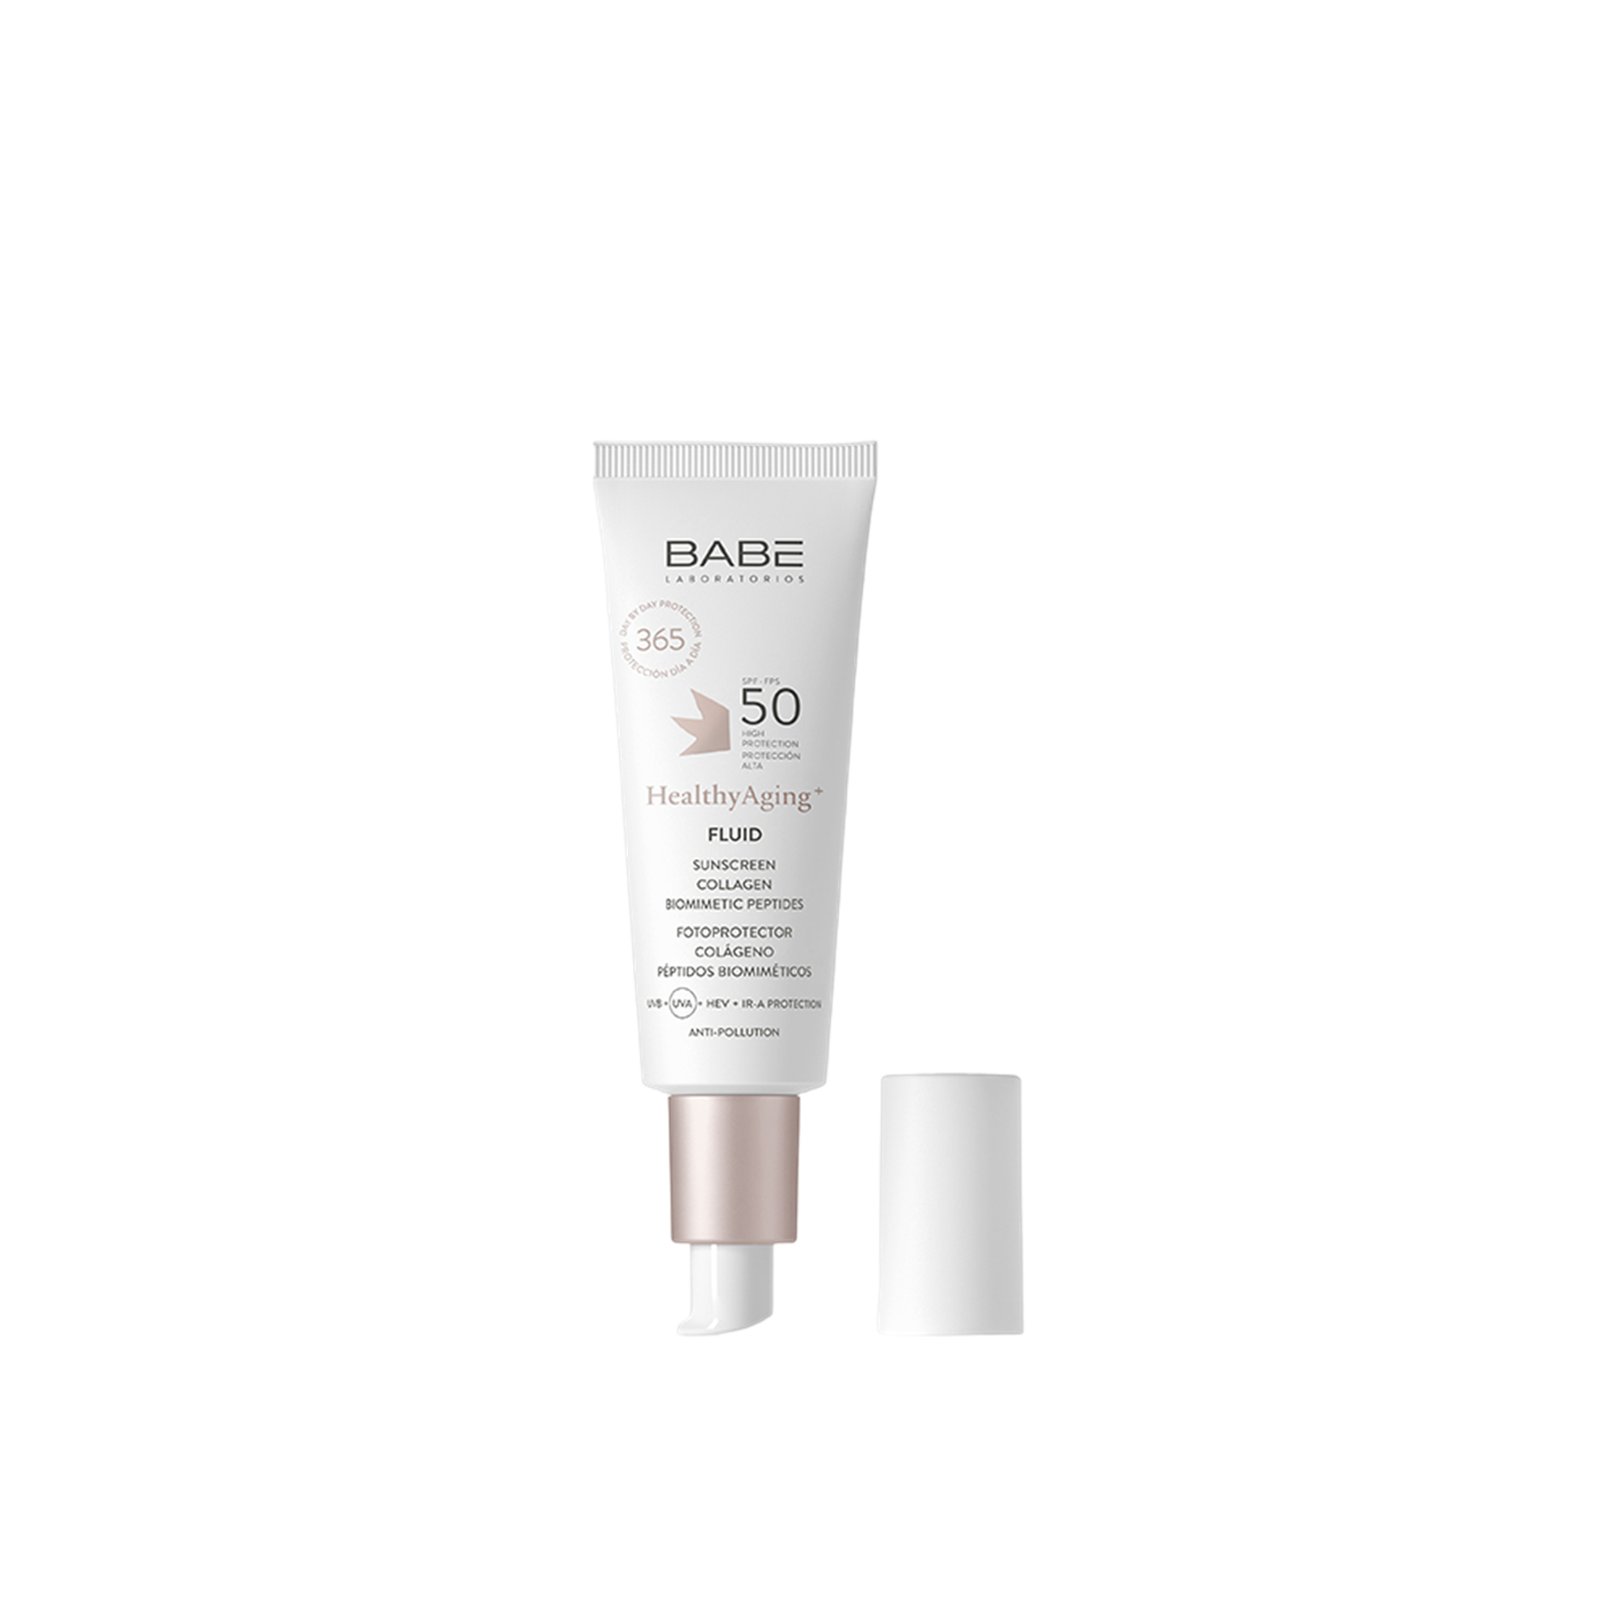 Babé HealthyAging+ Fluid Sunscreen Collagen SPF50 40ml